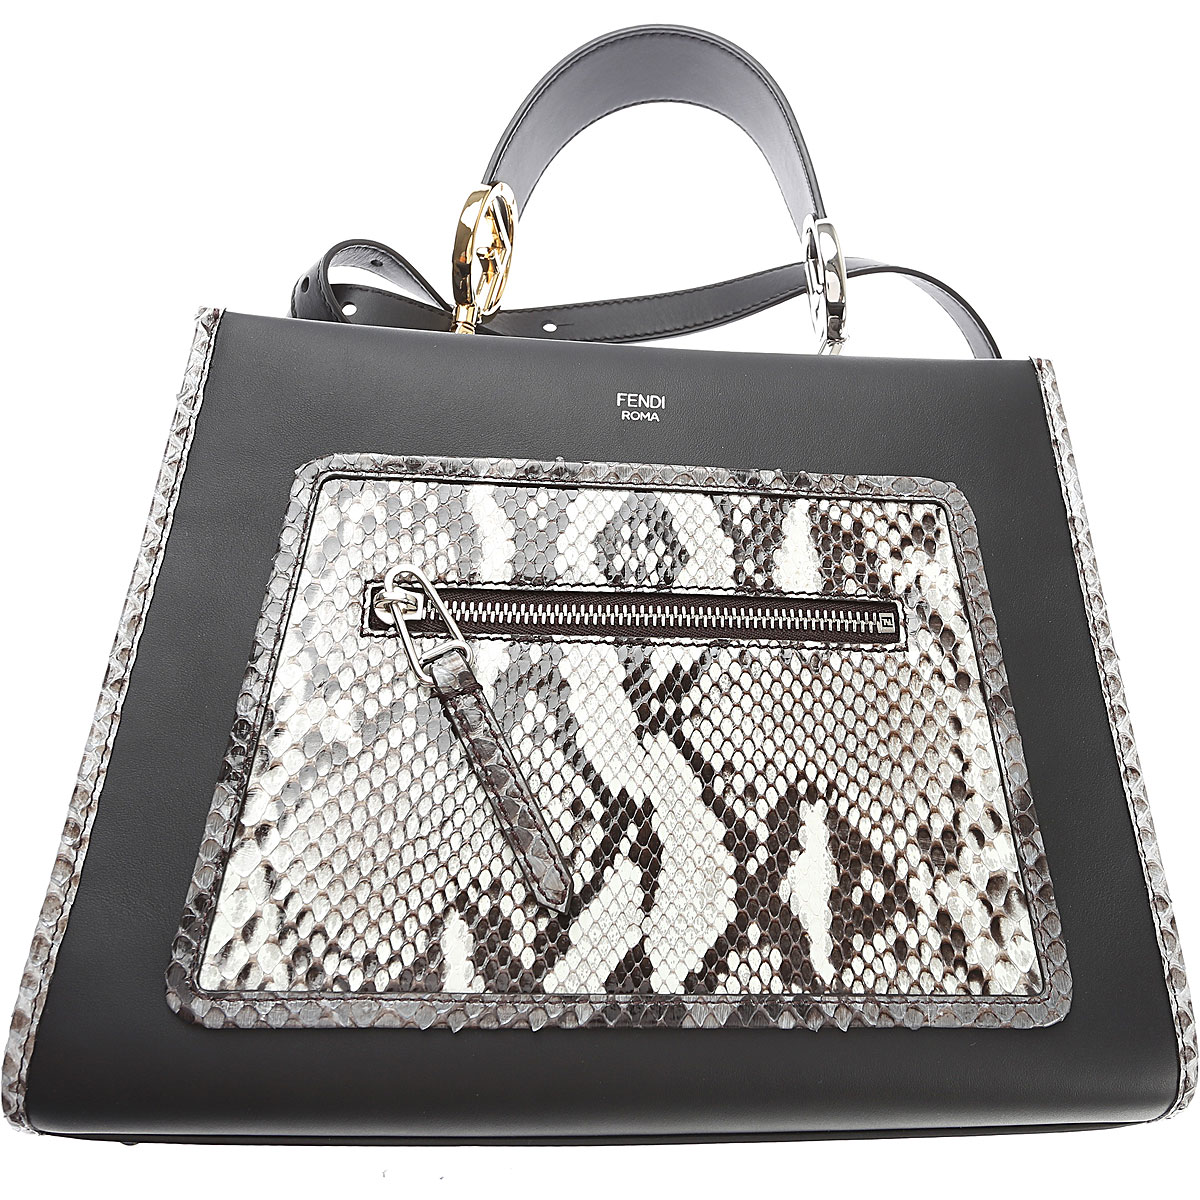 Handbags Fendi, Style code: 8bh344-a13f-f10vf